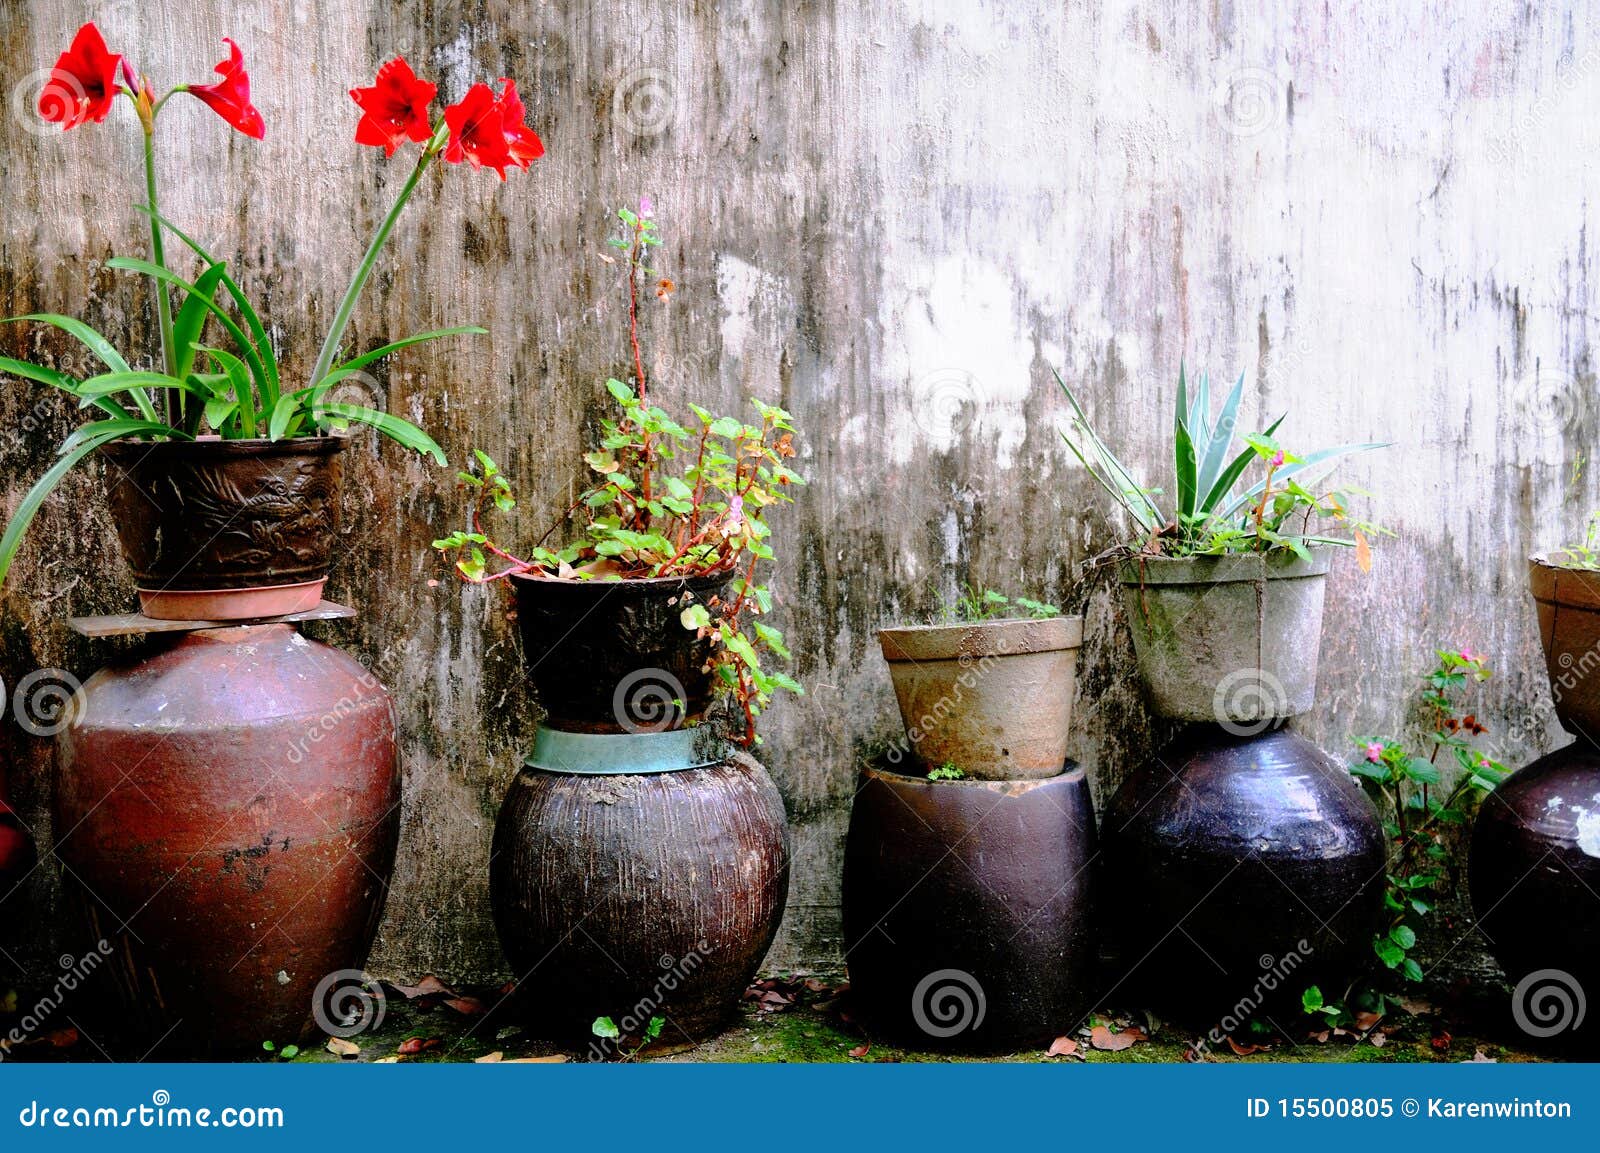 garden flowerpots and plants